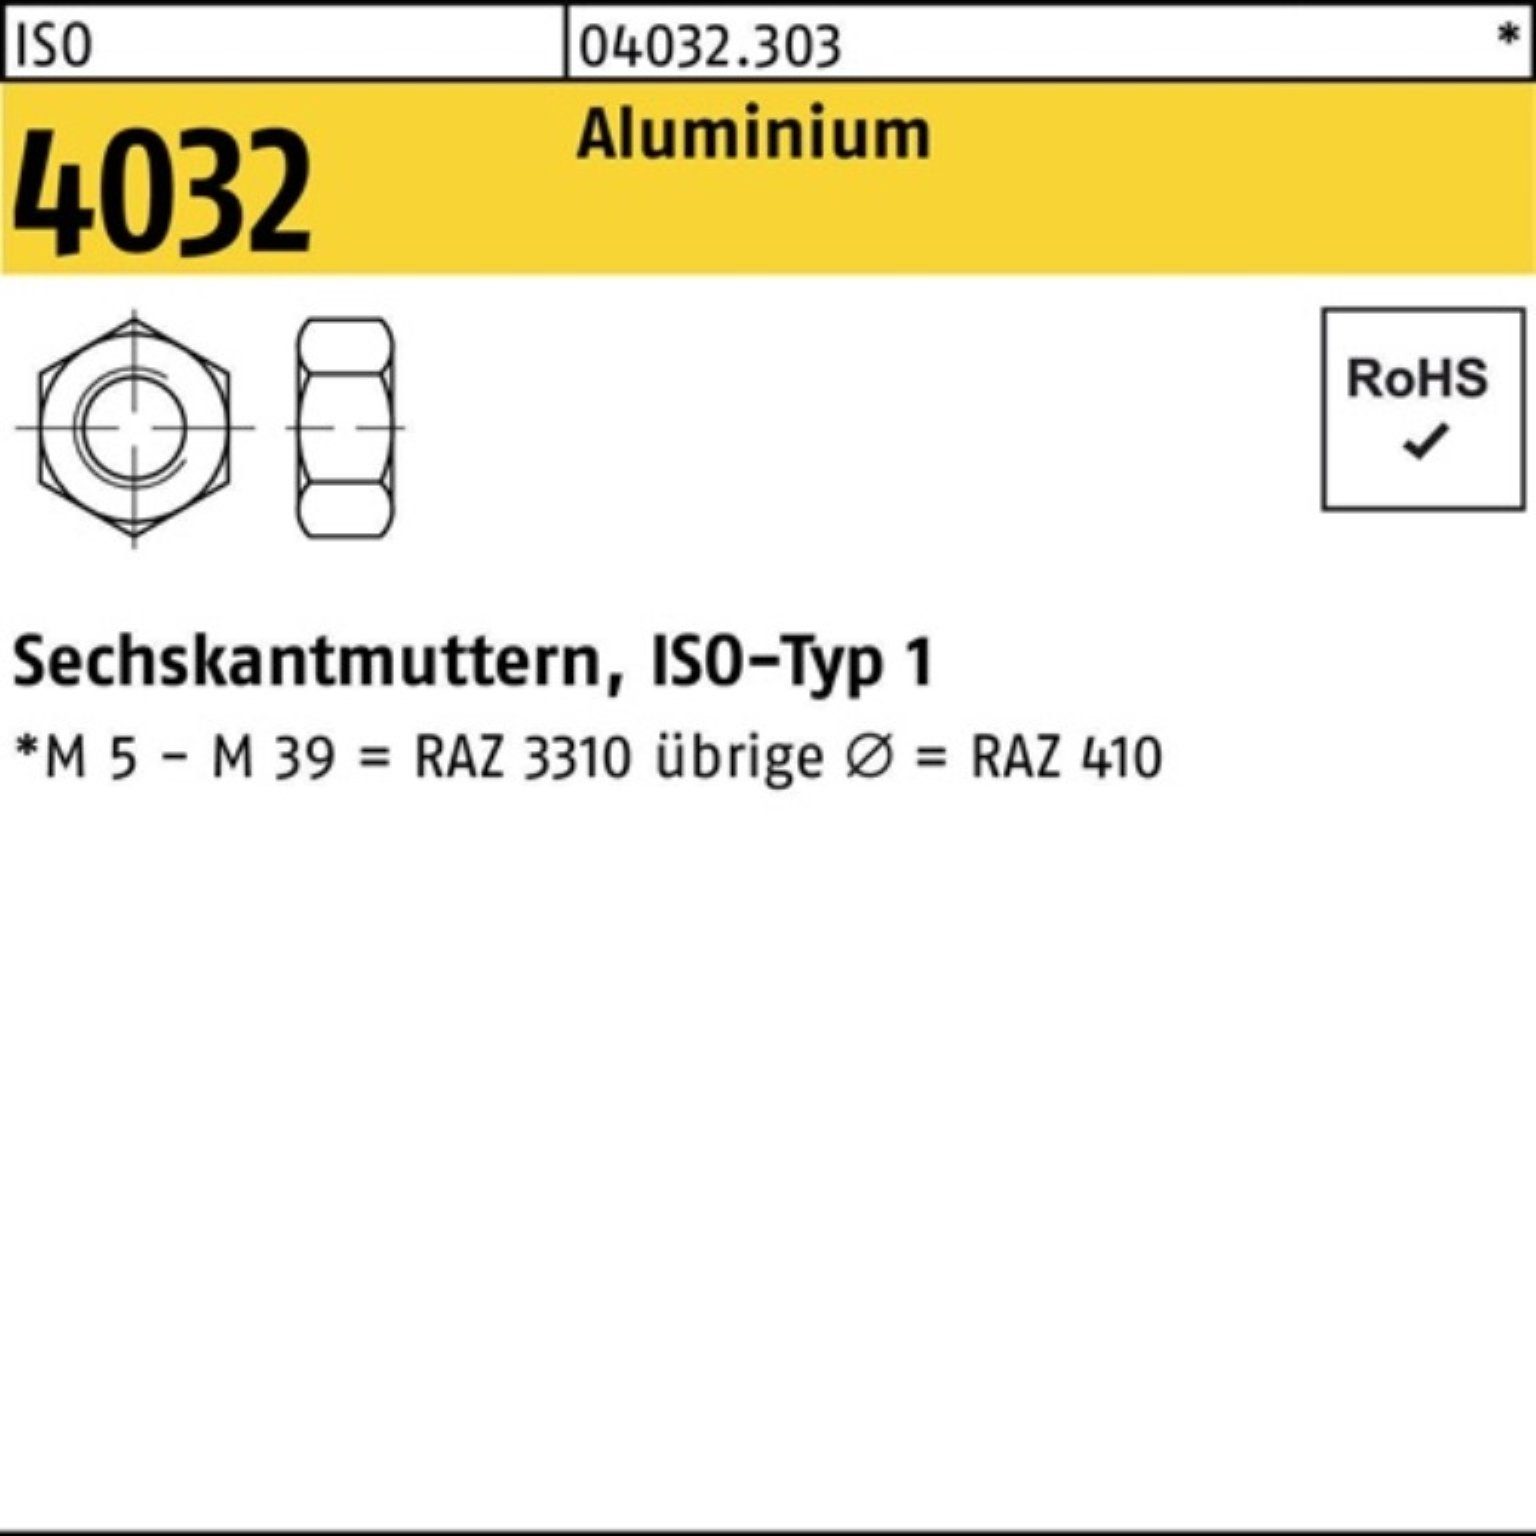 Bufab Muttern 100er Sechskantmutter ISO ISO Stück 4032 Pack 100 4032 Aluminium M10